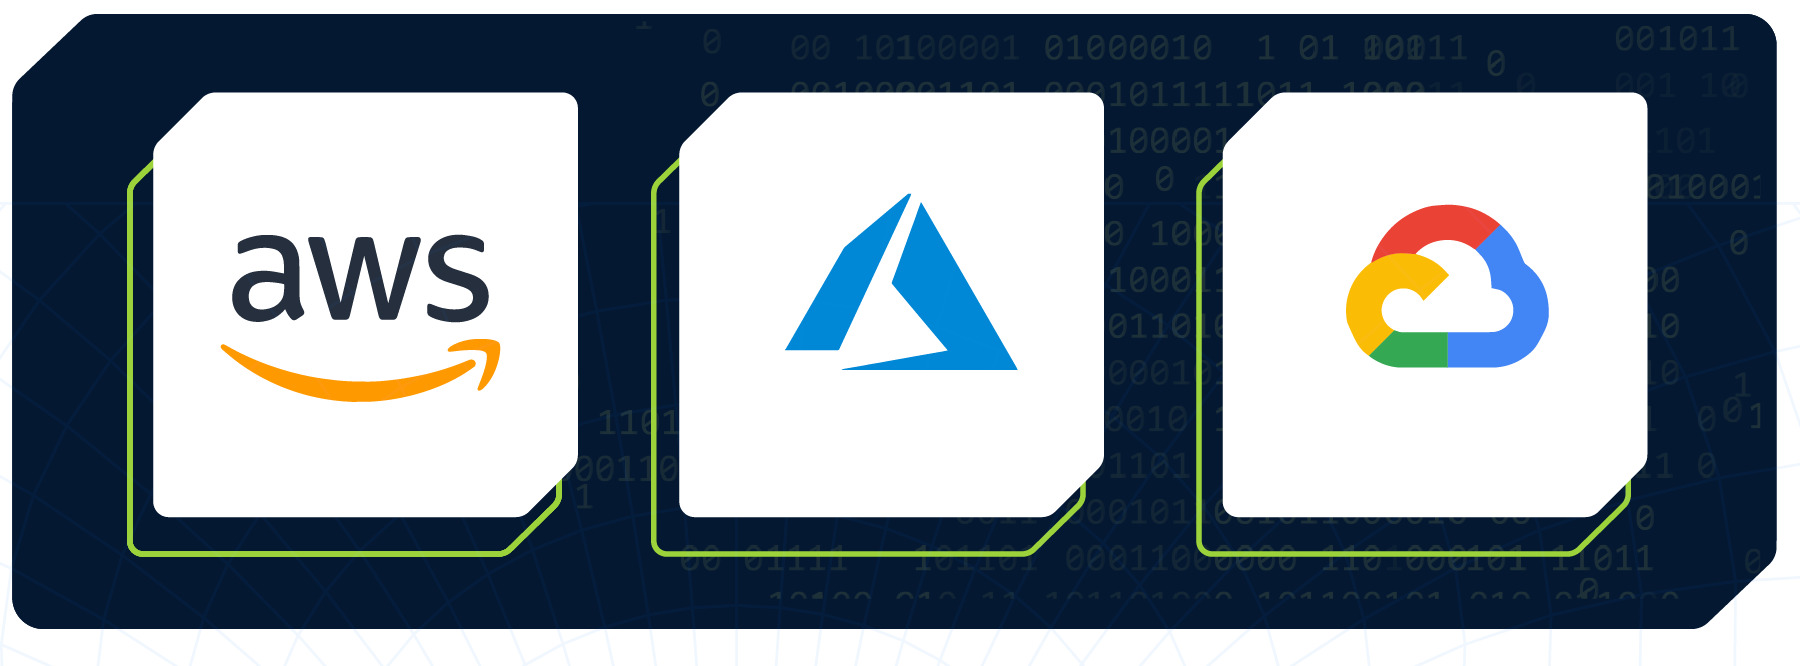 Figura com os logotipos da AWS, Azure e Google Cloud Plataform.